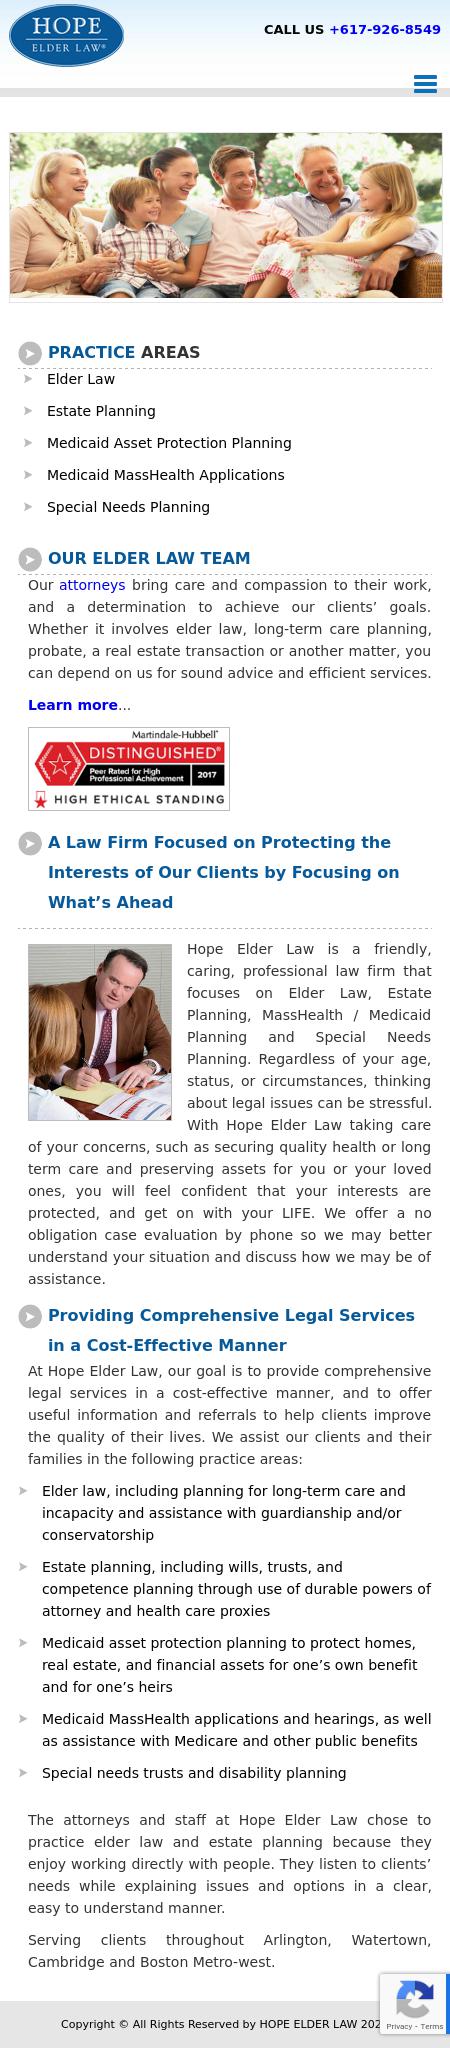 Hope Elder Law - Watertown MA Lawyers